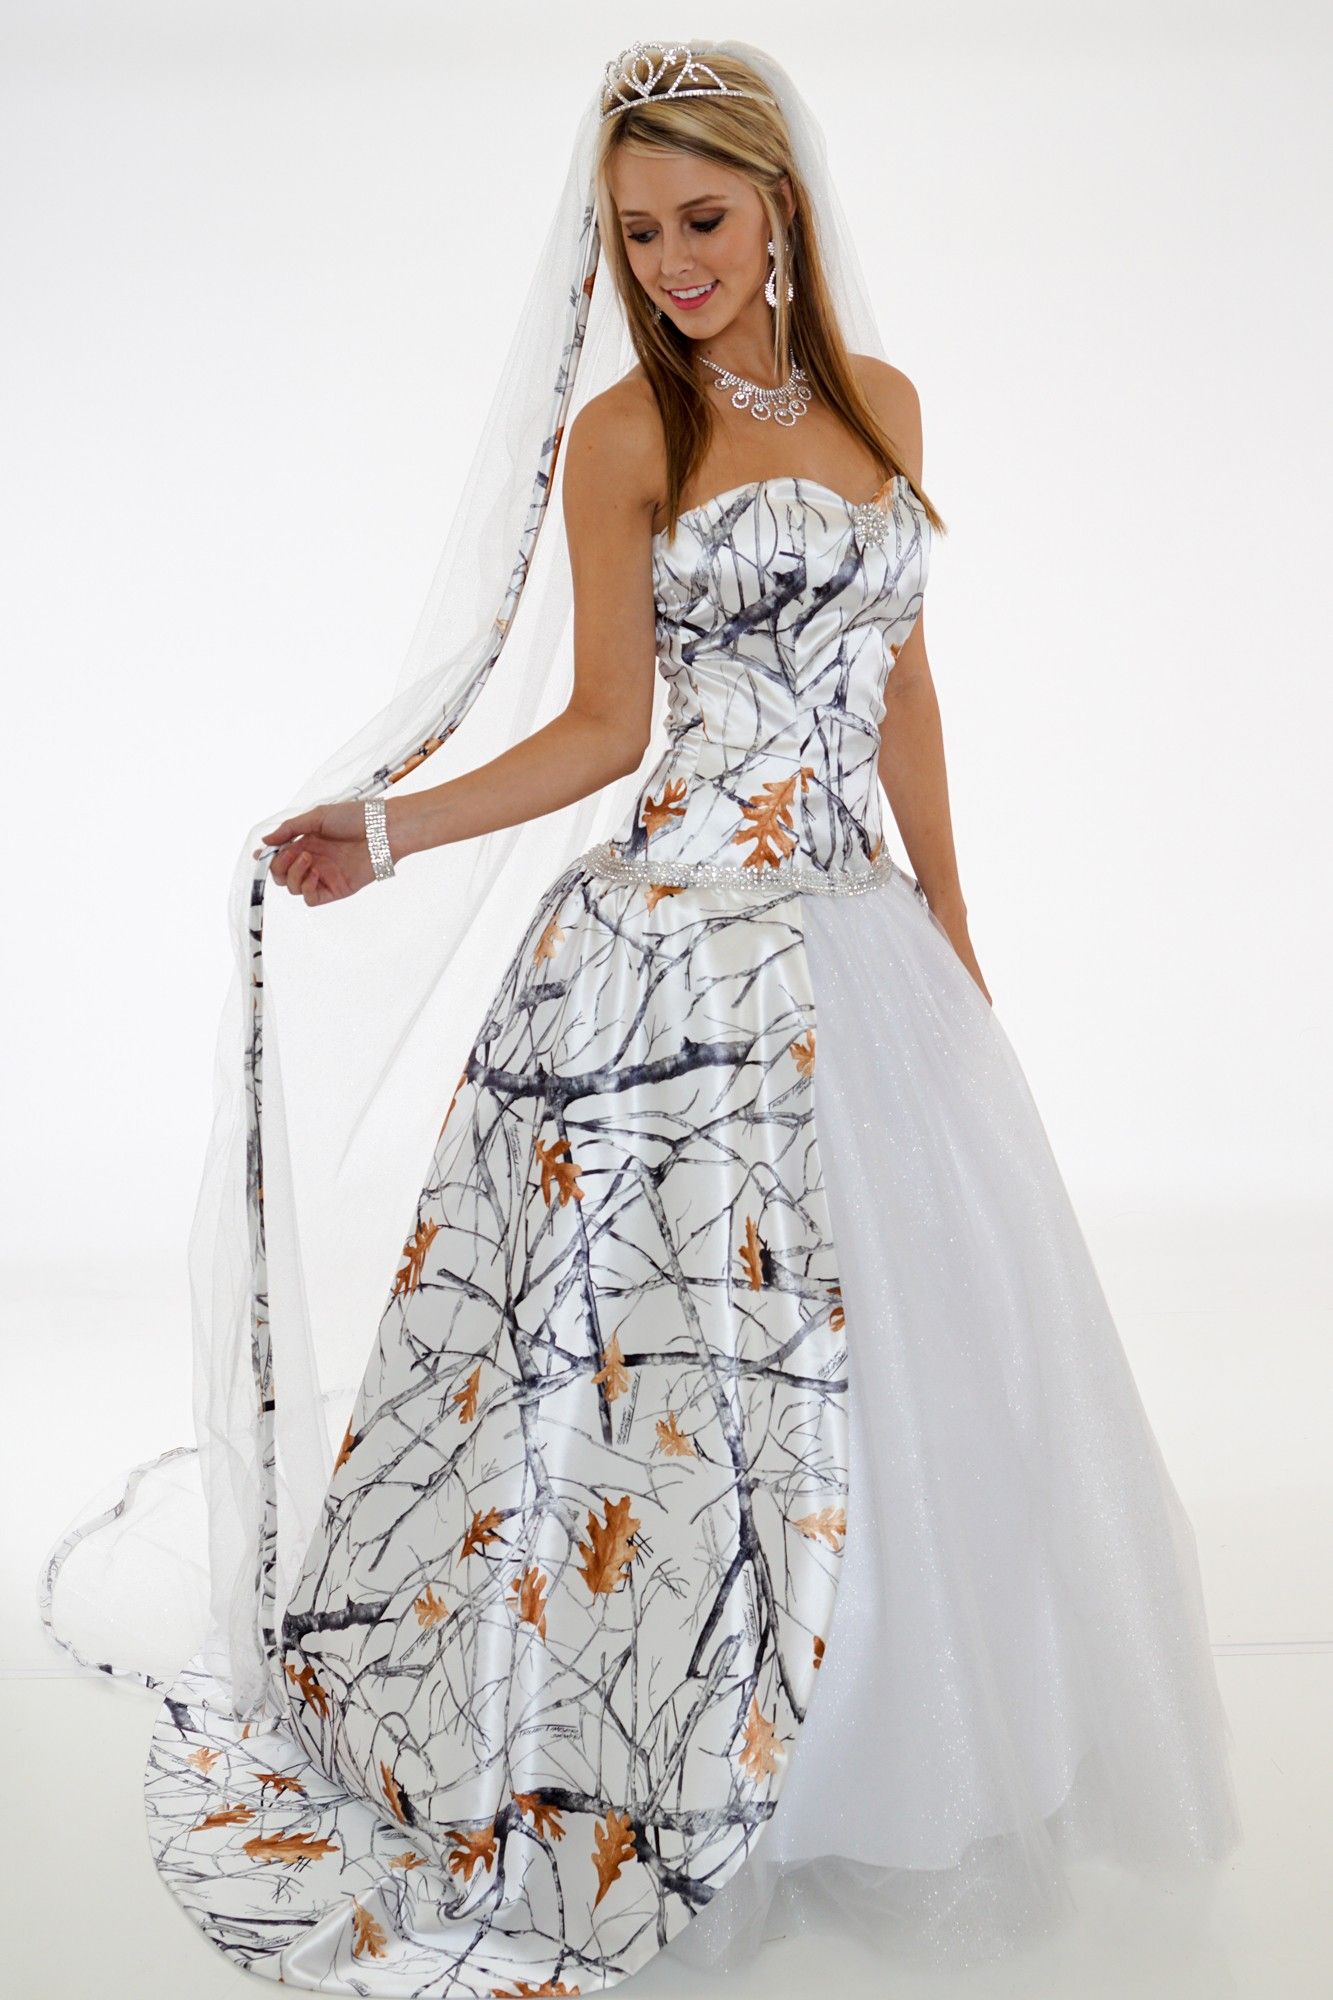  Camo Wedding Dresses with Veil 